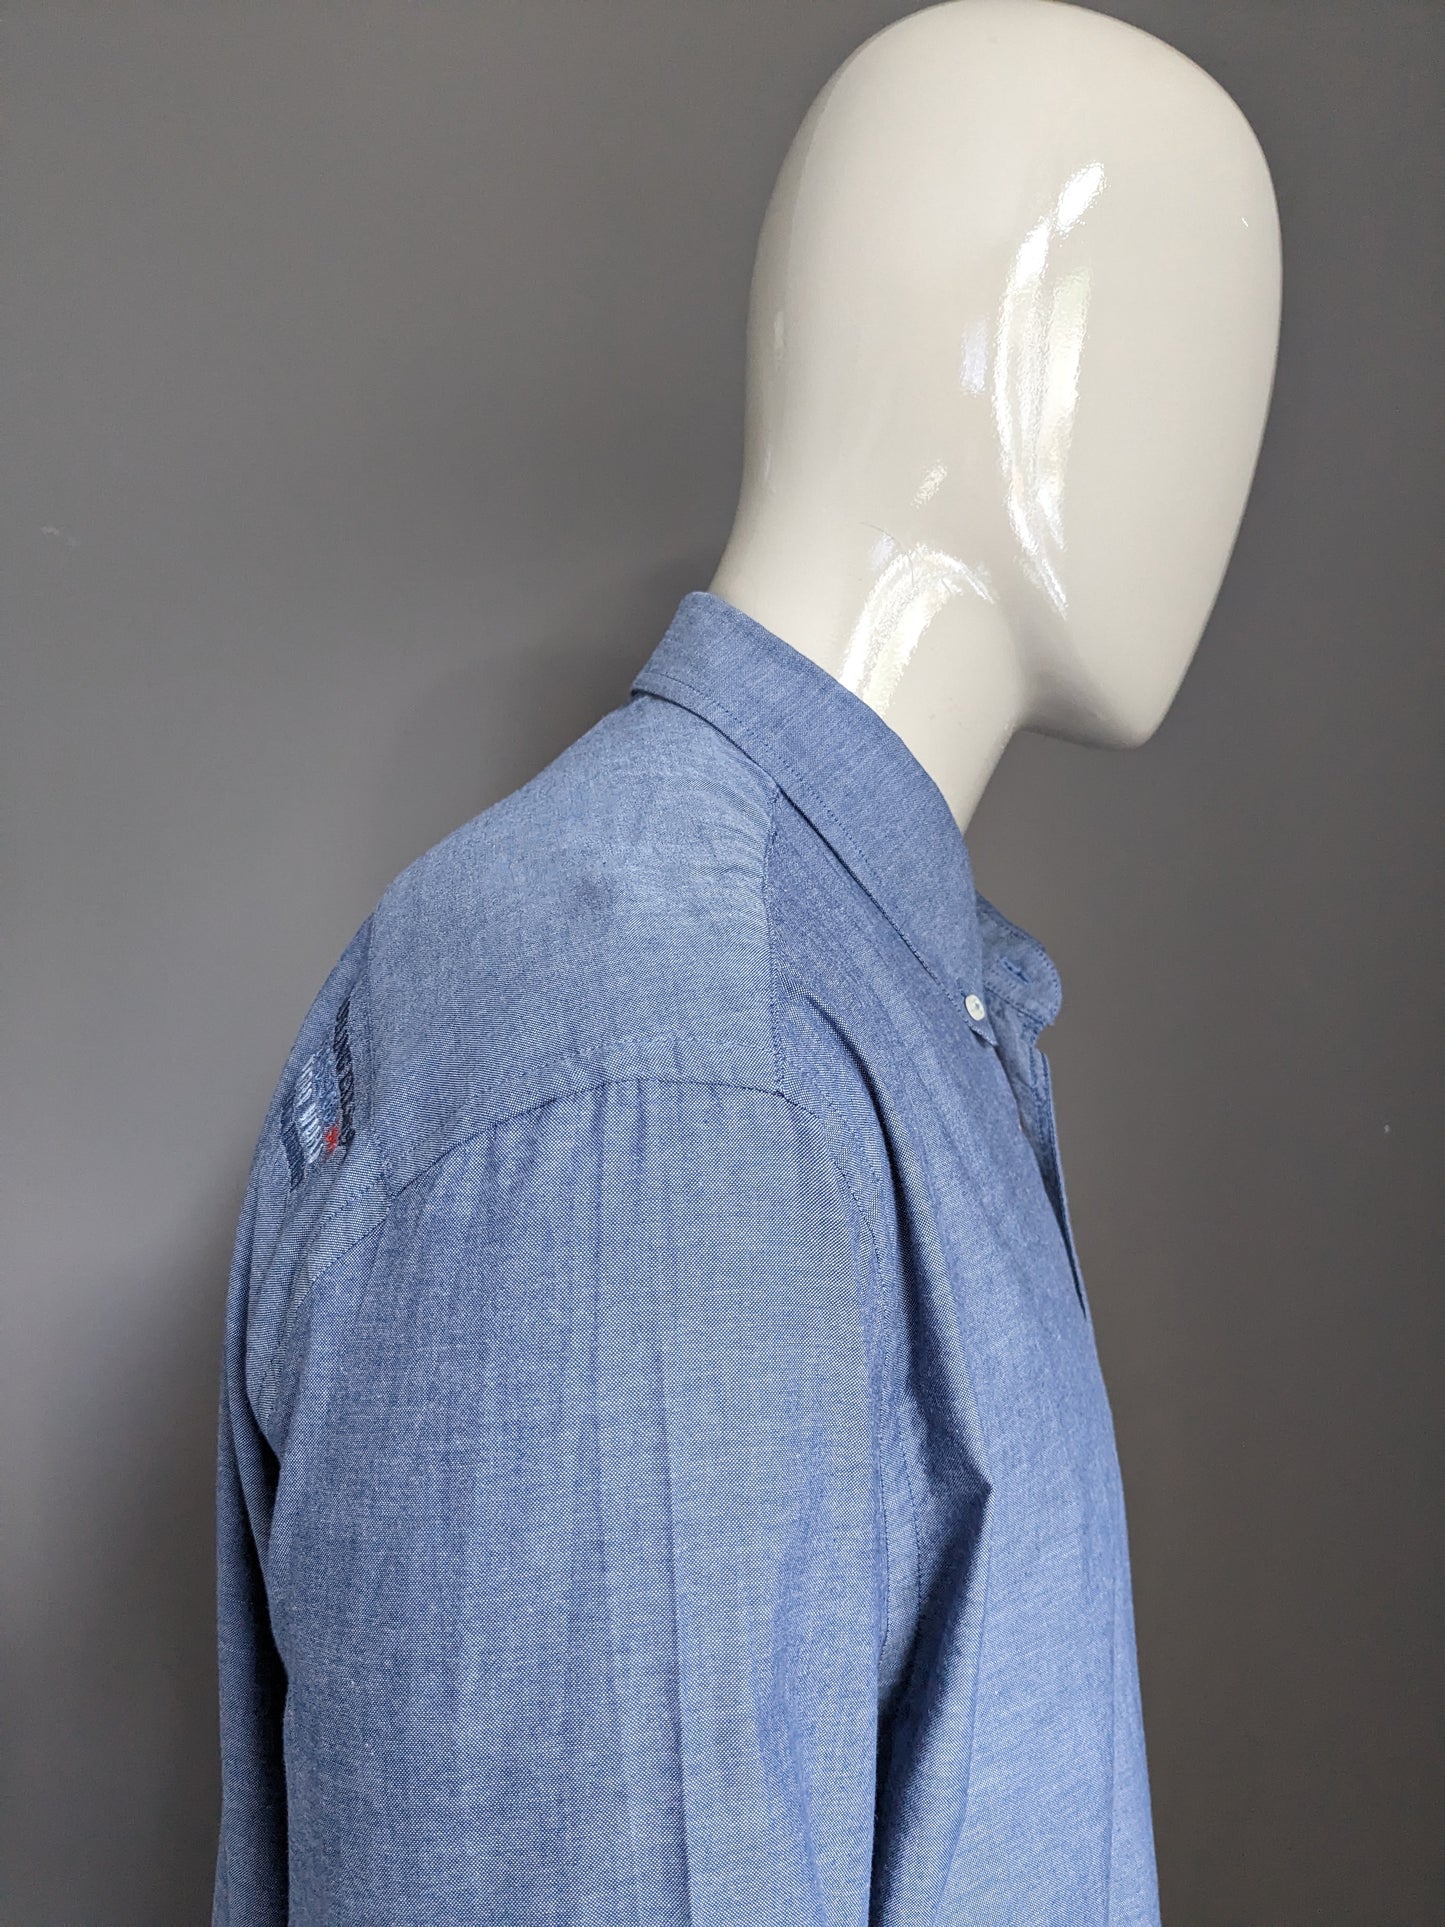 Tailor & Son Shirt. Bleu mélangé avec des applications. Taille 2xl / xxl.